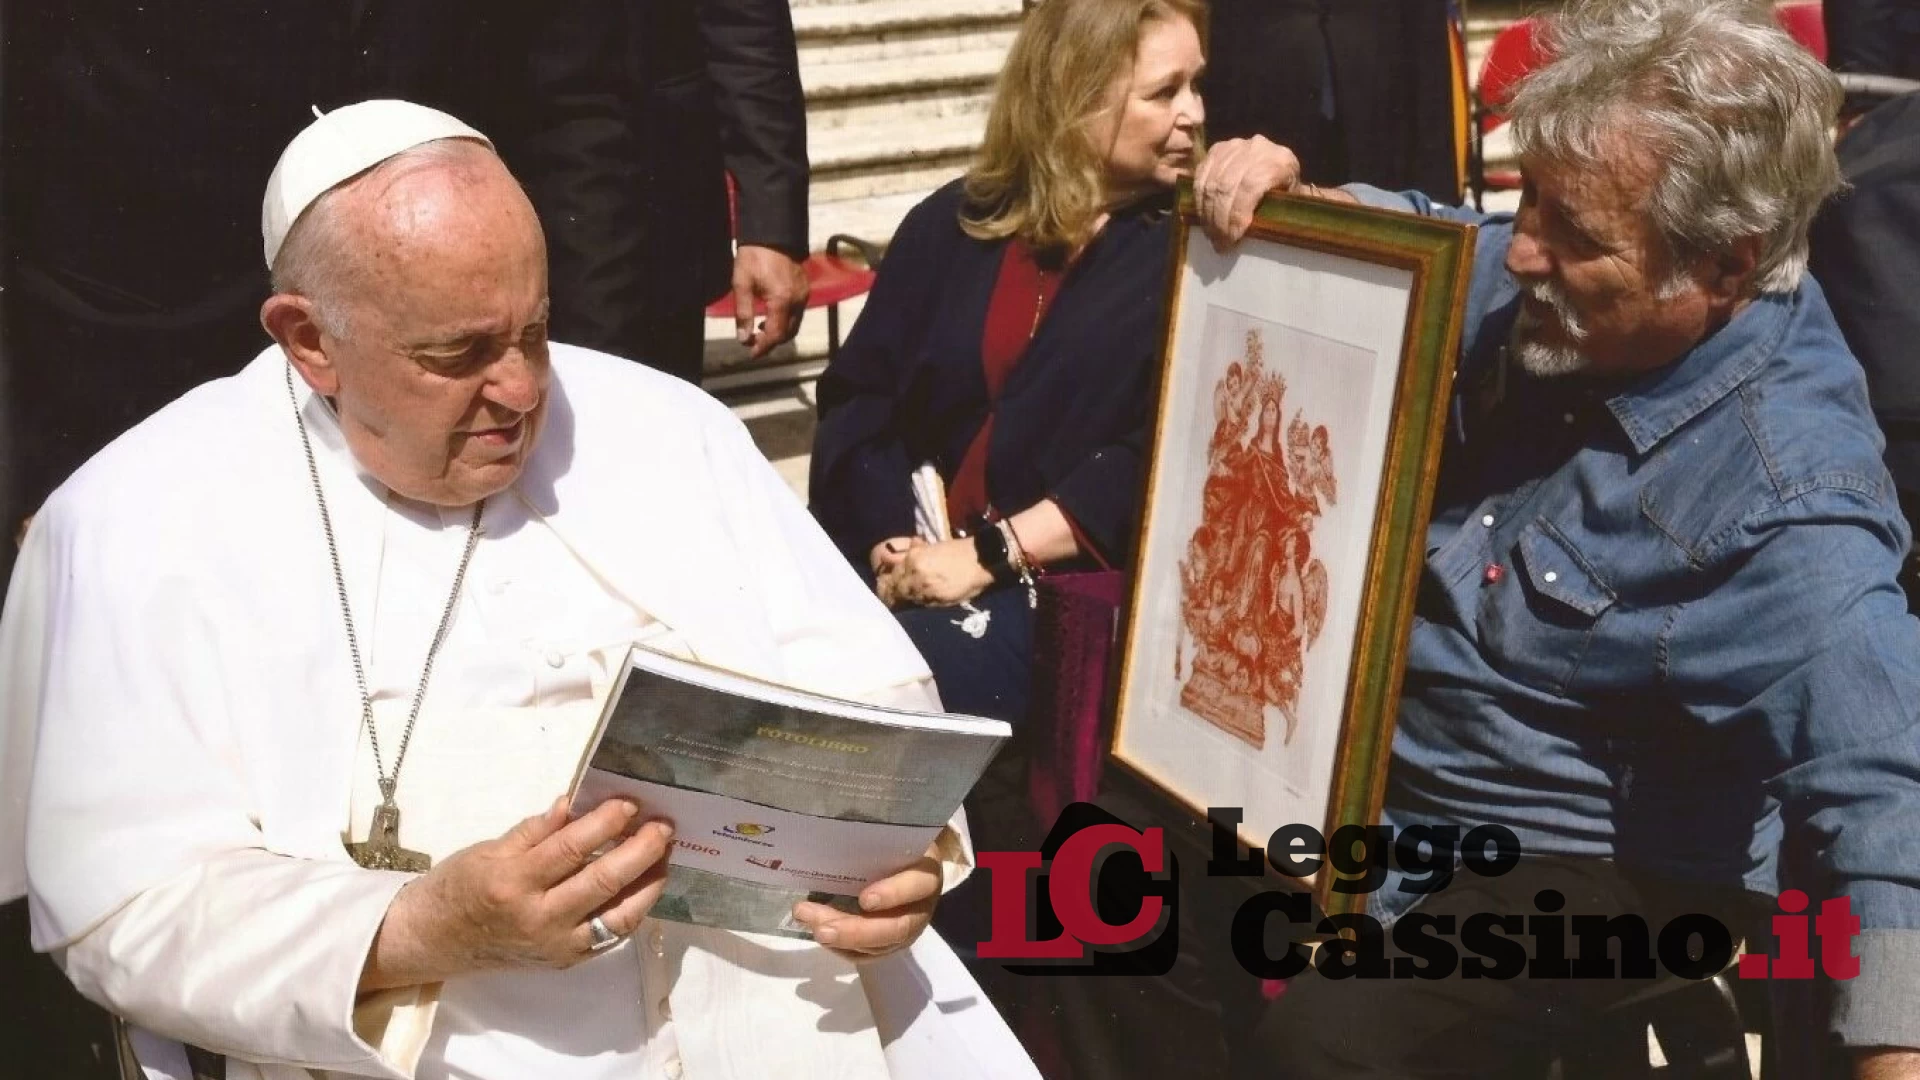 Alberto Ceccon dona il suo libro a Papa Francesco: “Una grande emozione”